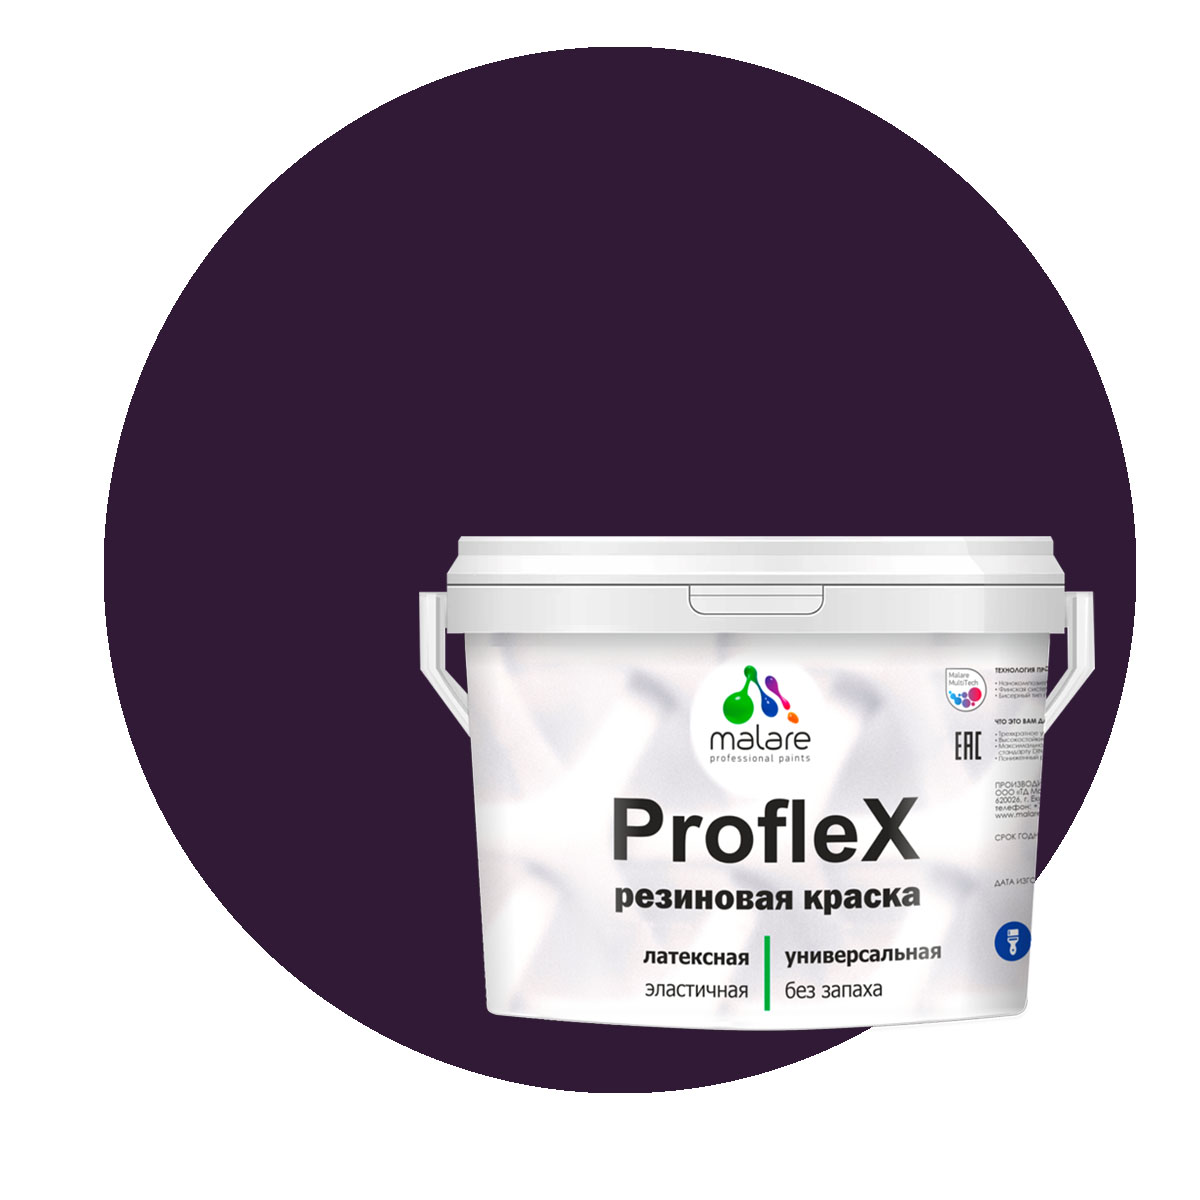 Краска Malare ProfleX для фасадов, интерьера, мебели, черничные ночи, 1 кг. щелочной очиститель фасадов зданий plex